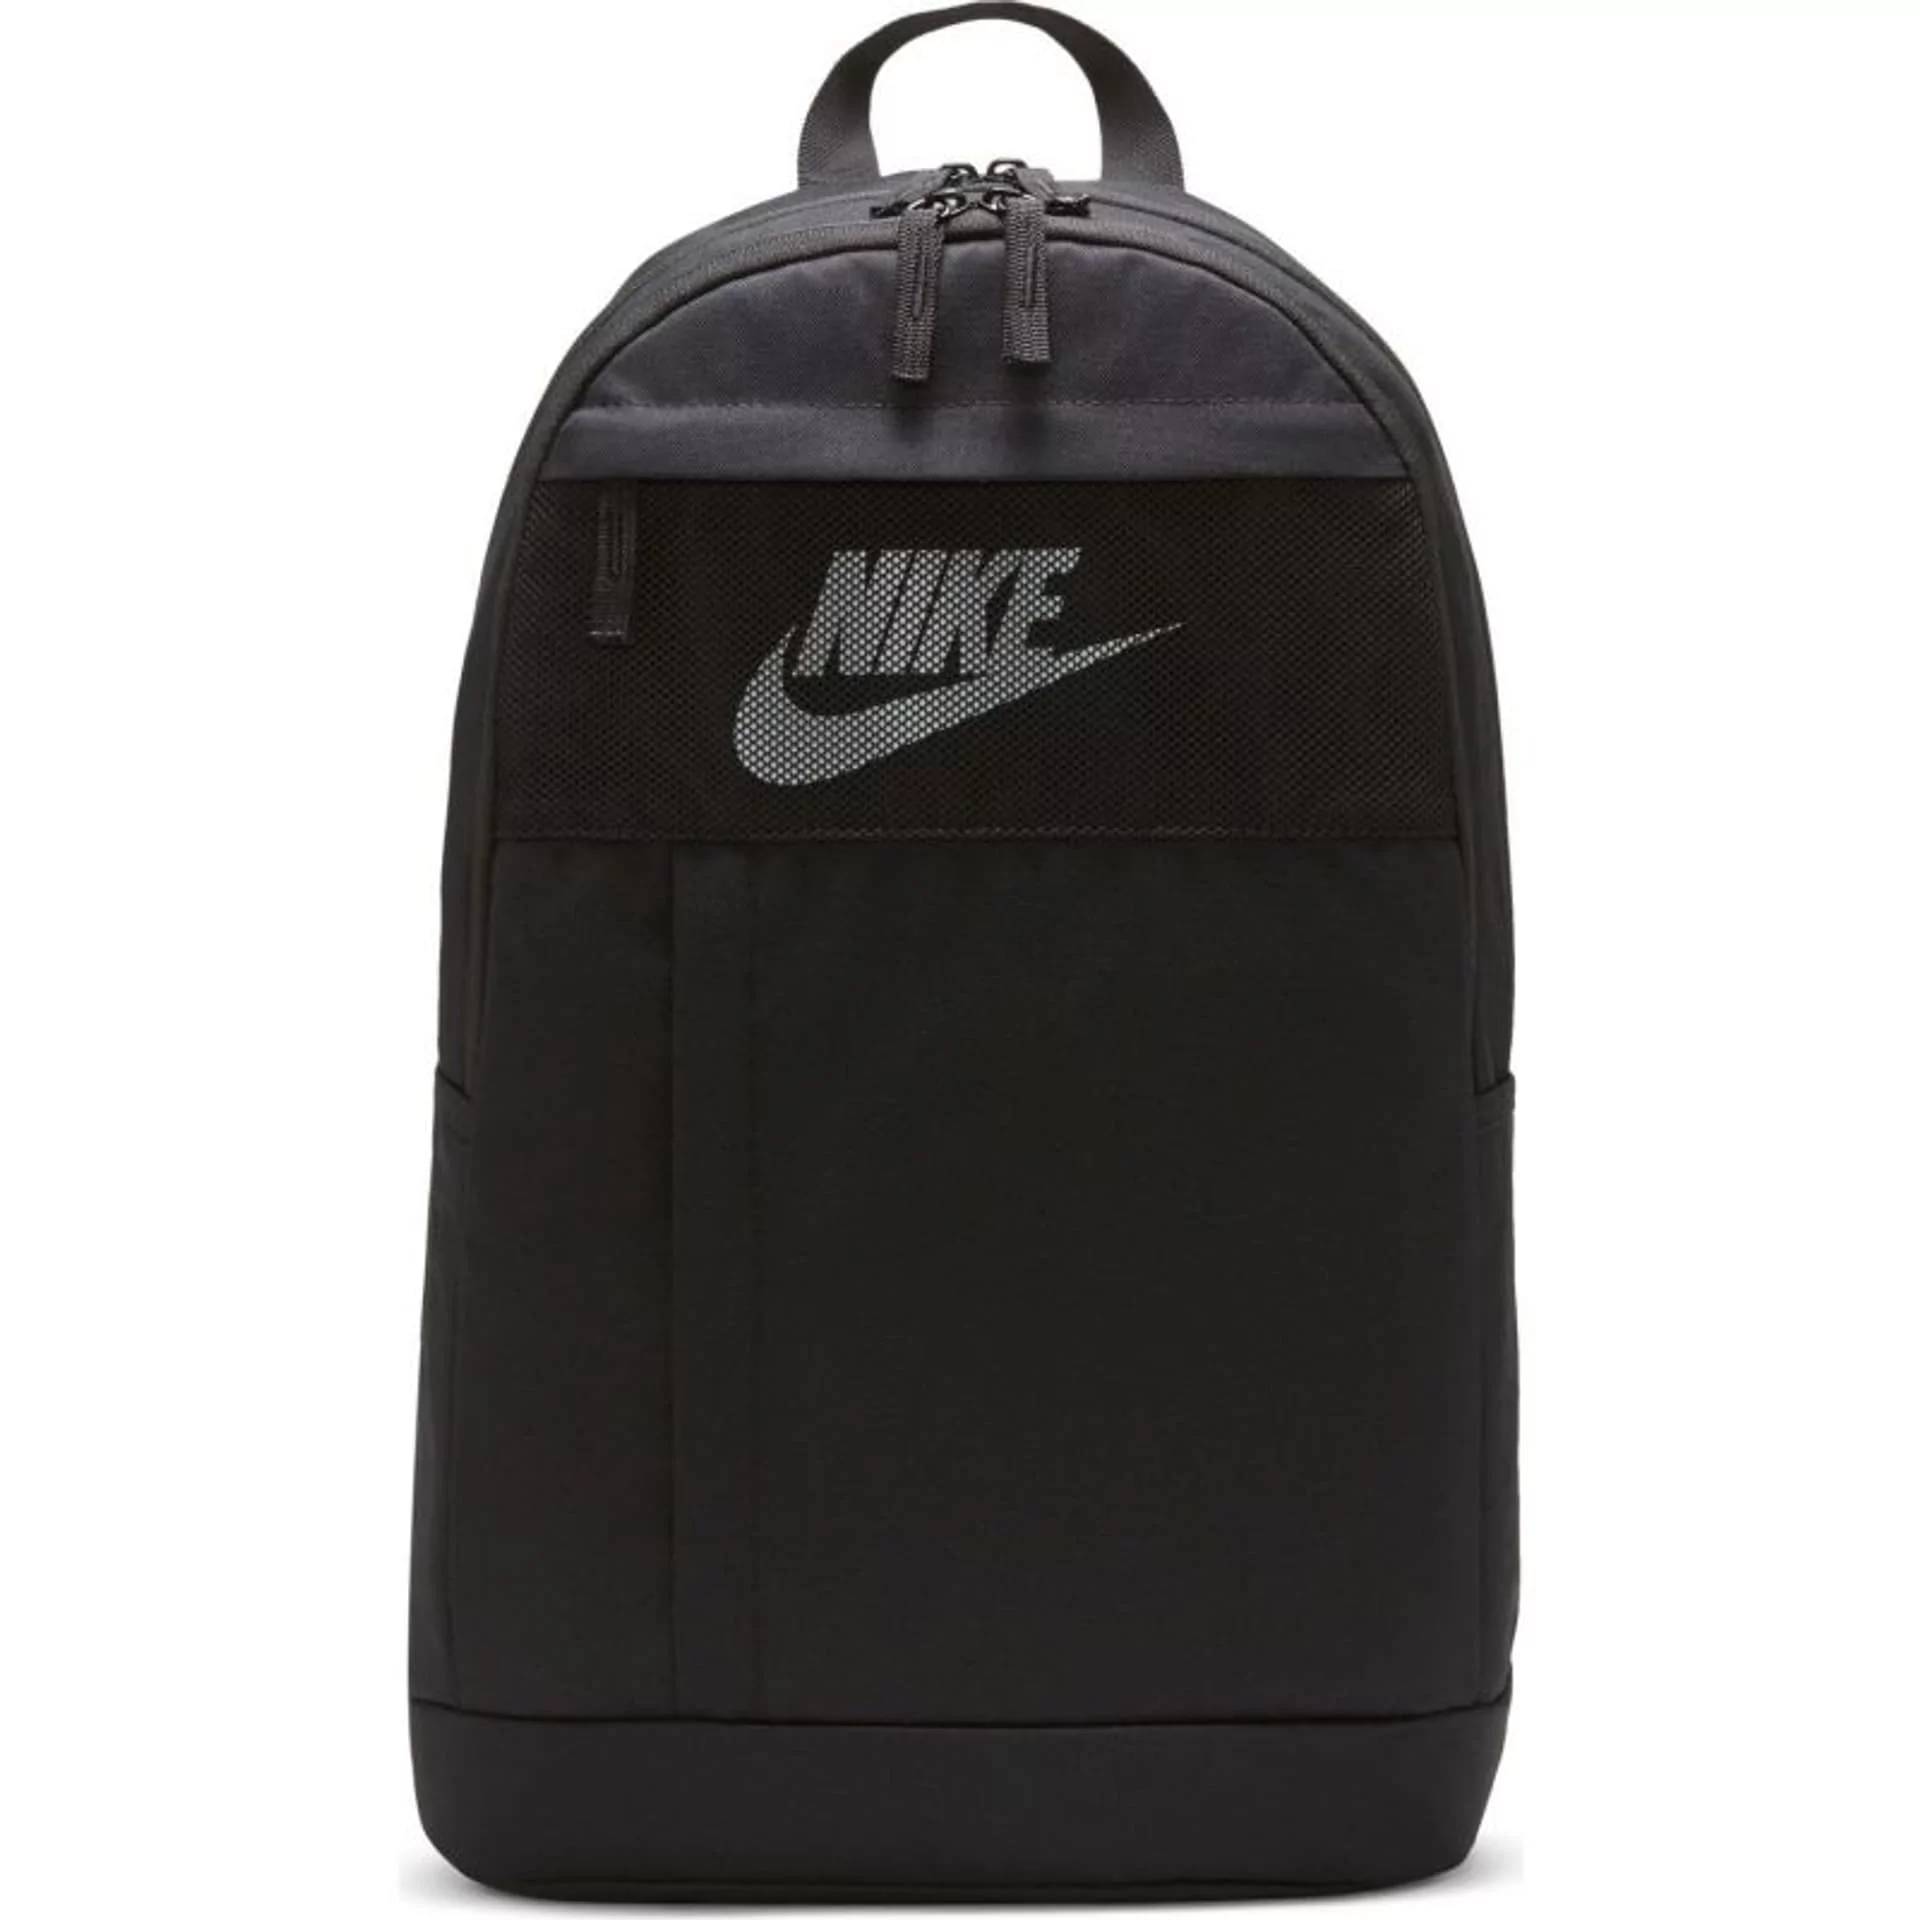 Nike PLECAK SZKOLNY SPORTOWY Elemental Backpack czarny DD0562  010_20210822215512 - Ceny i opinie na Skapiec.pl